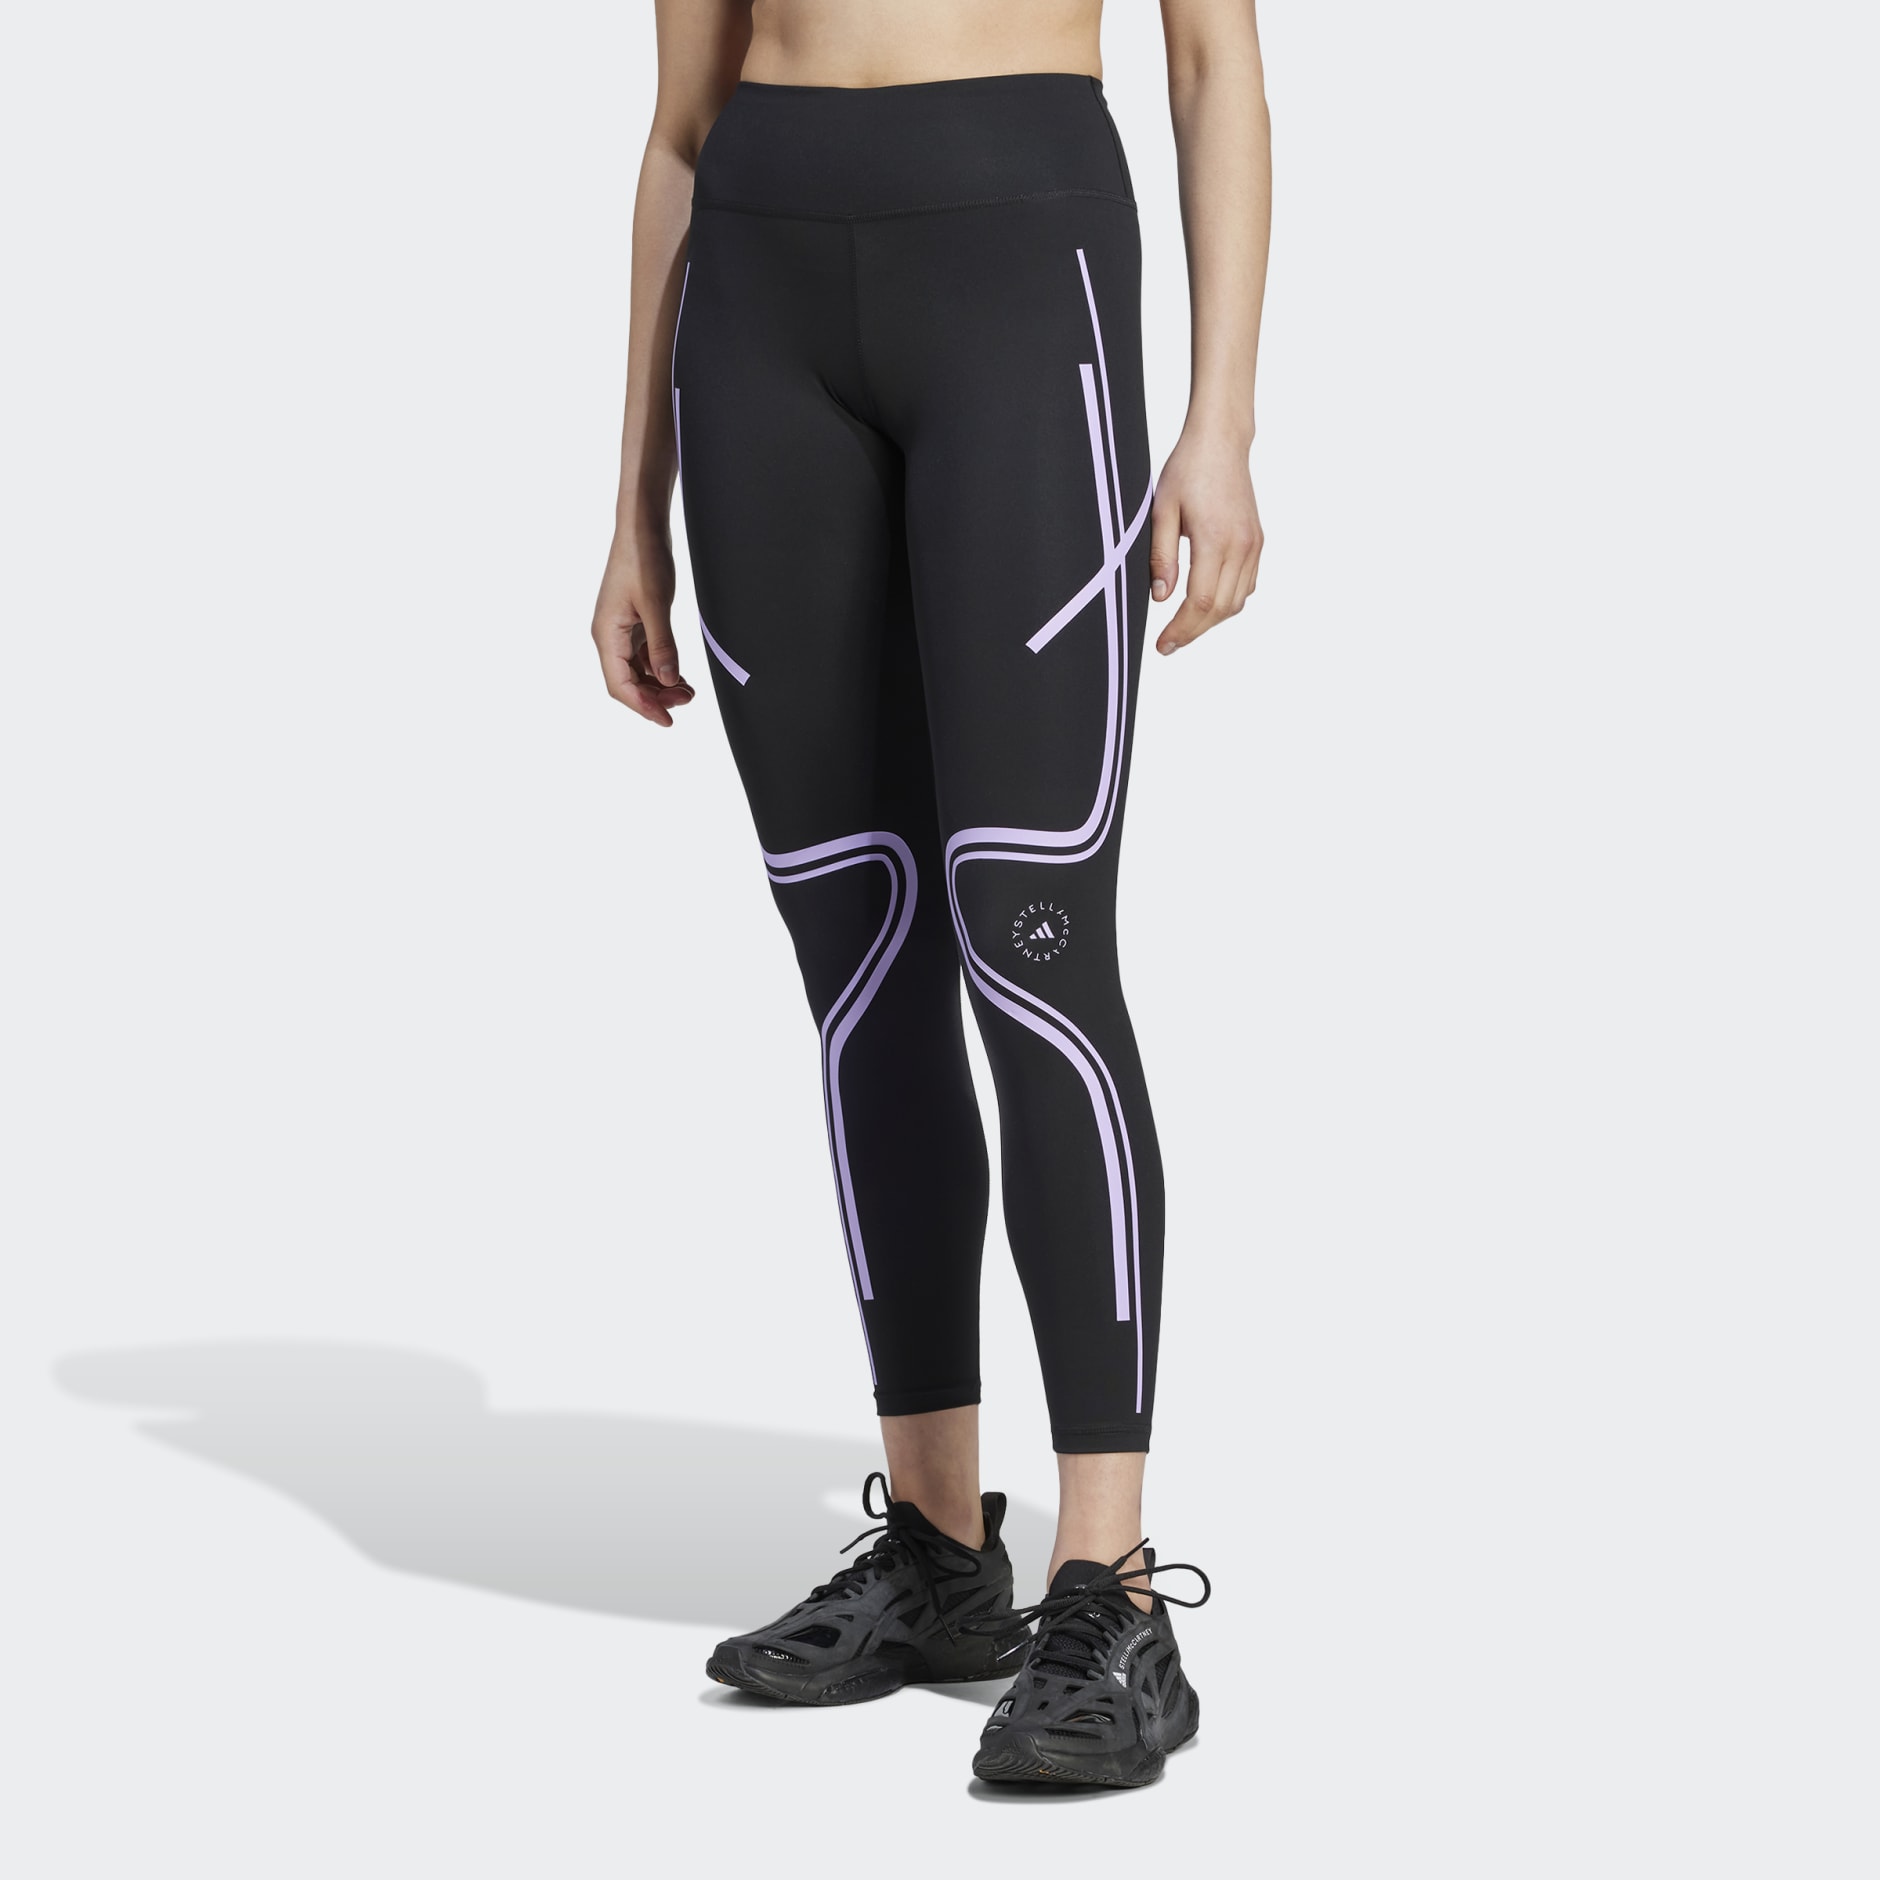 Yoga compression tights, adidas by Stella McCartney